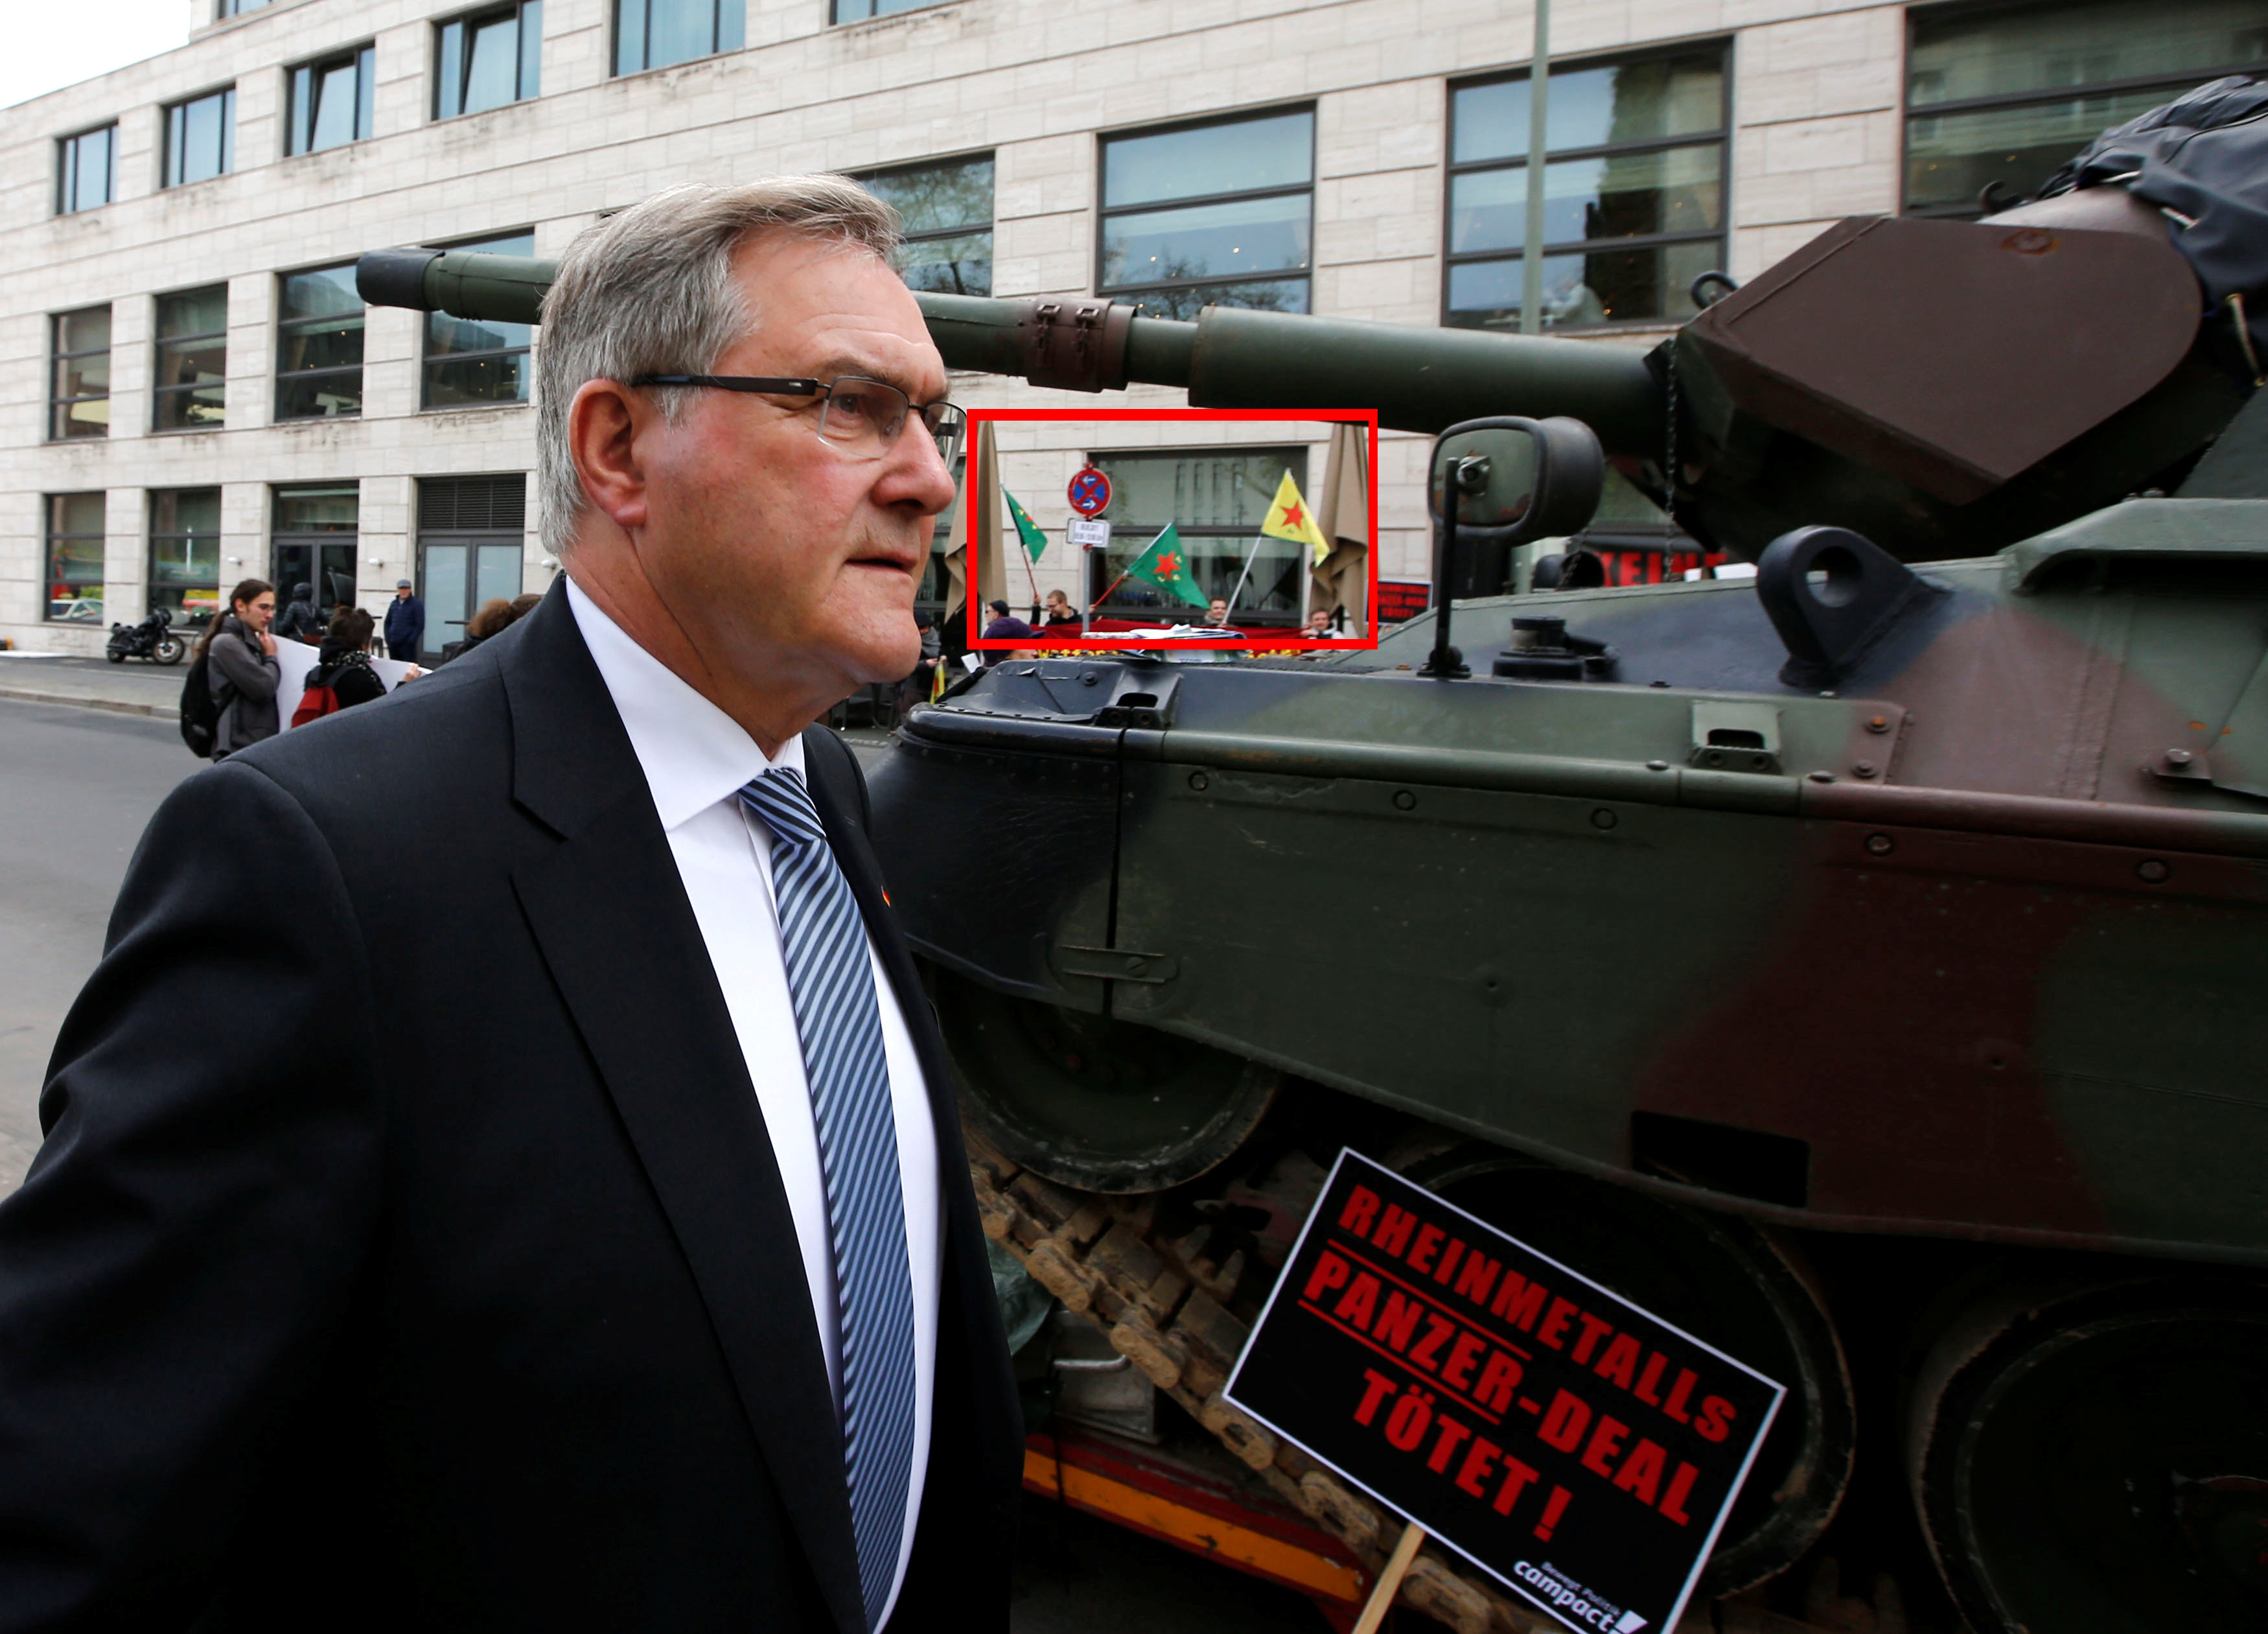 Alman tankının Türkiye'de üretilmesine karşı çıkıyorlar